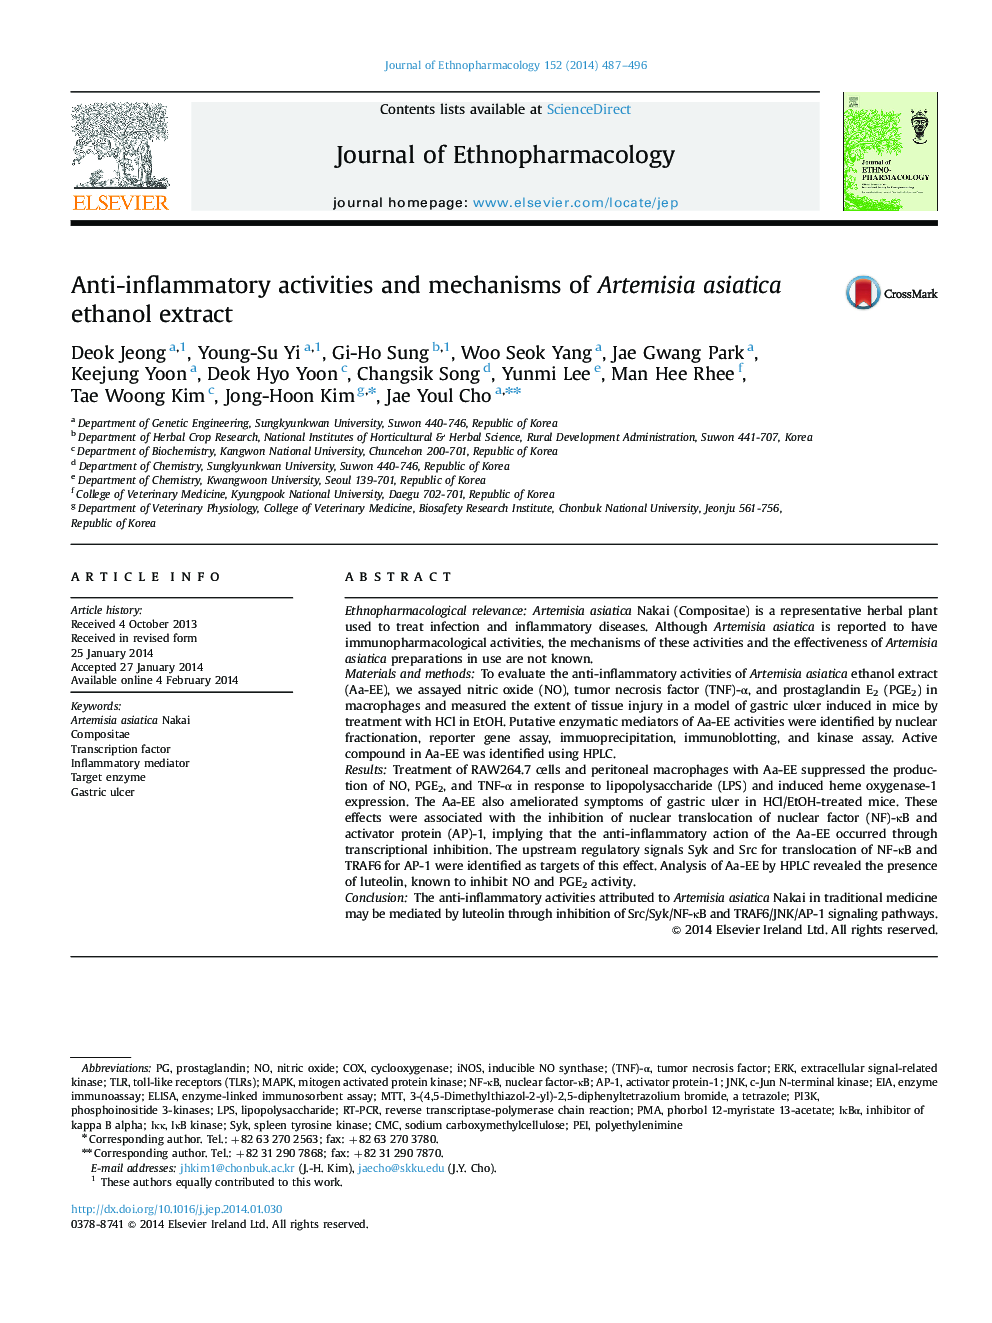 فعالیت های ضد التهابی و مکانیسم عصاره اتانول آرتمیسیا آسیاکیکا 